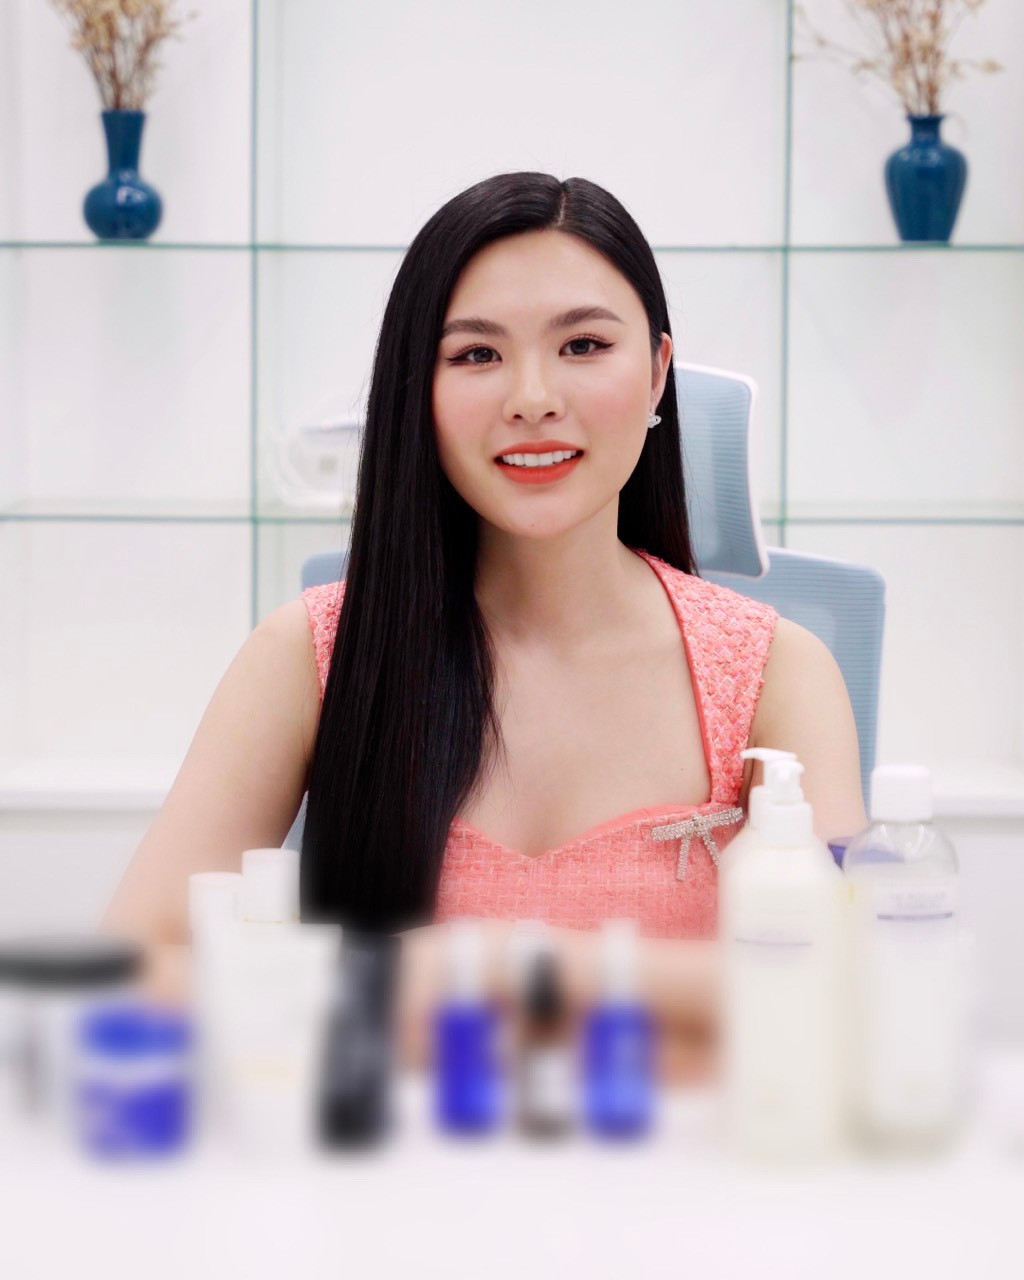 Cố vấn sắc đẹp Hoa hậu Du lịch 2022 Quỳnh Trang chia sẻ bí quyết giữ gìn làn da tươi trẻ khi bận rộn - ảnh 3